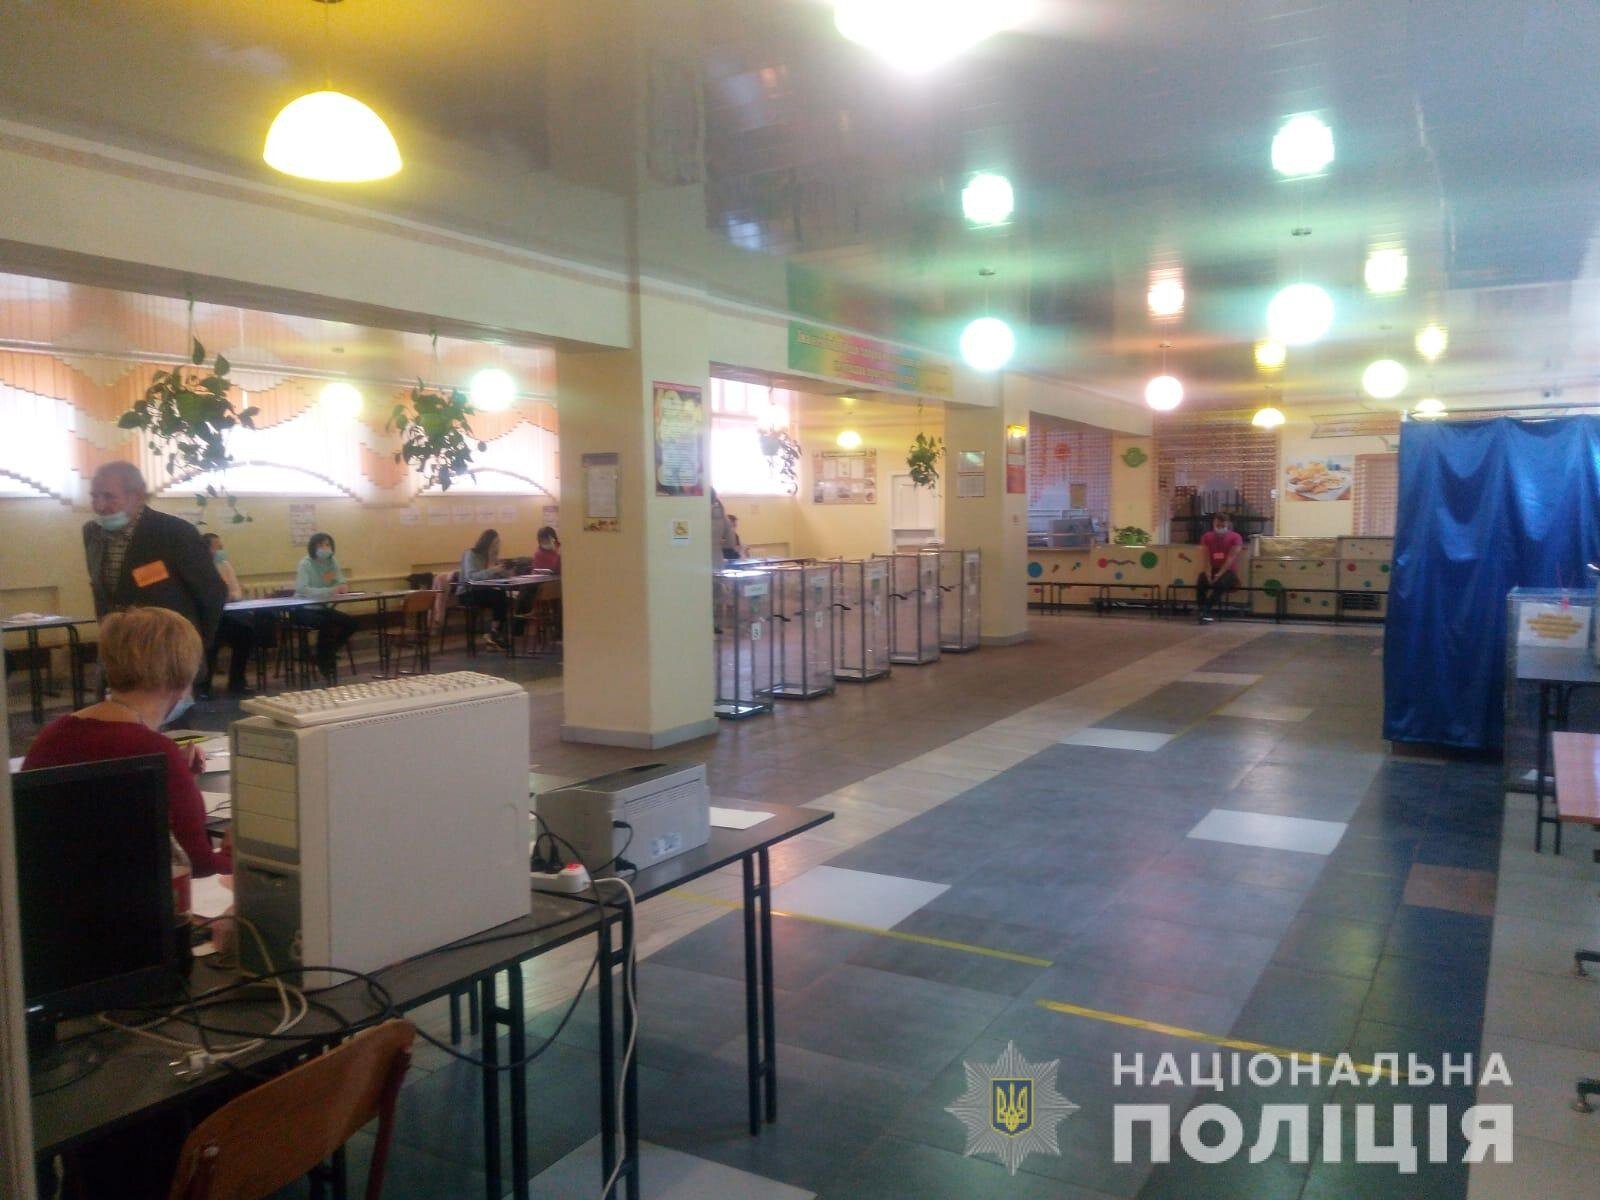 Выборы мэра Харькове. Все 605 избирательных участка закрылись вовремя — полиция